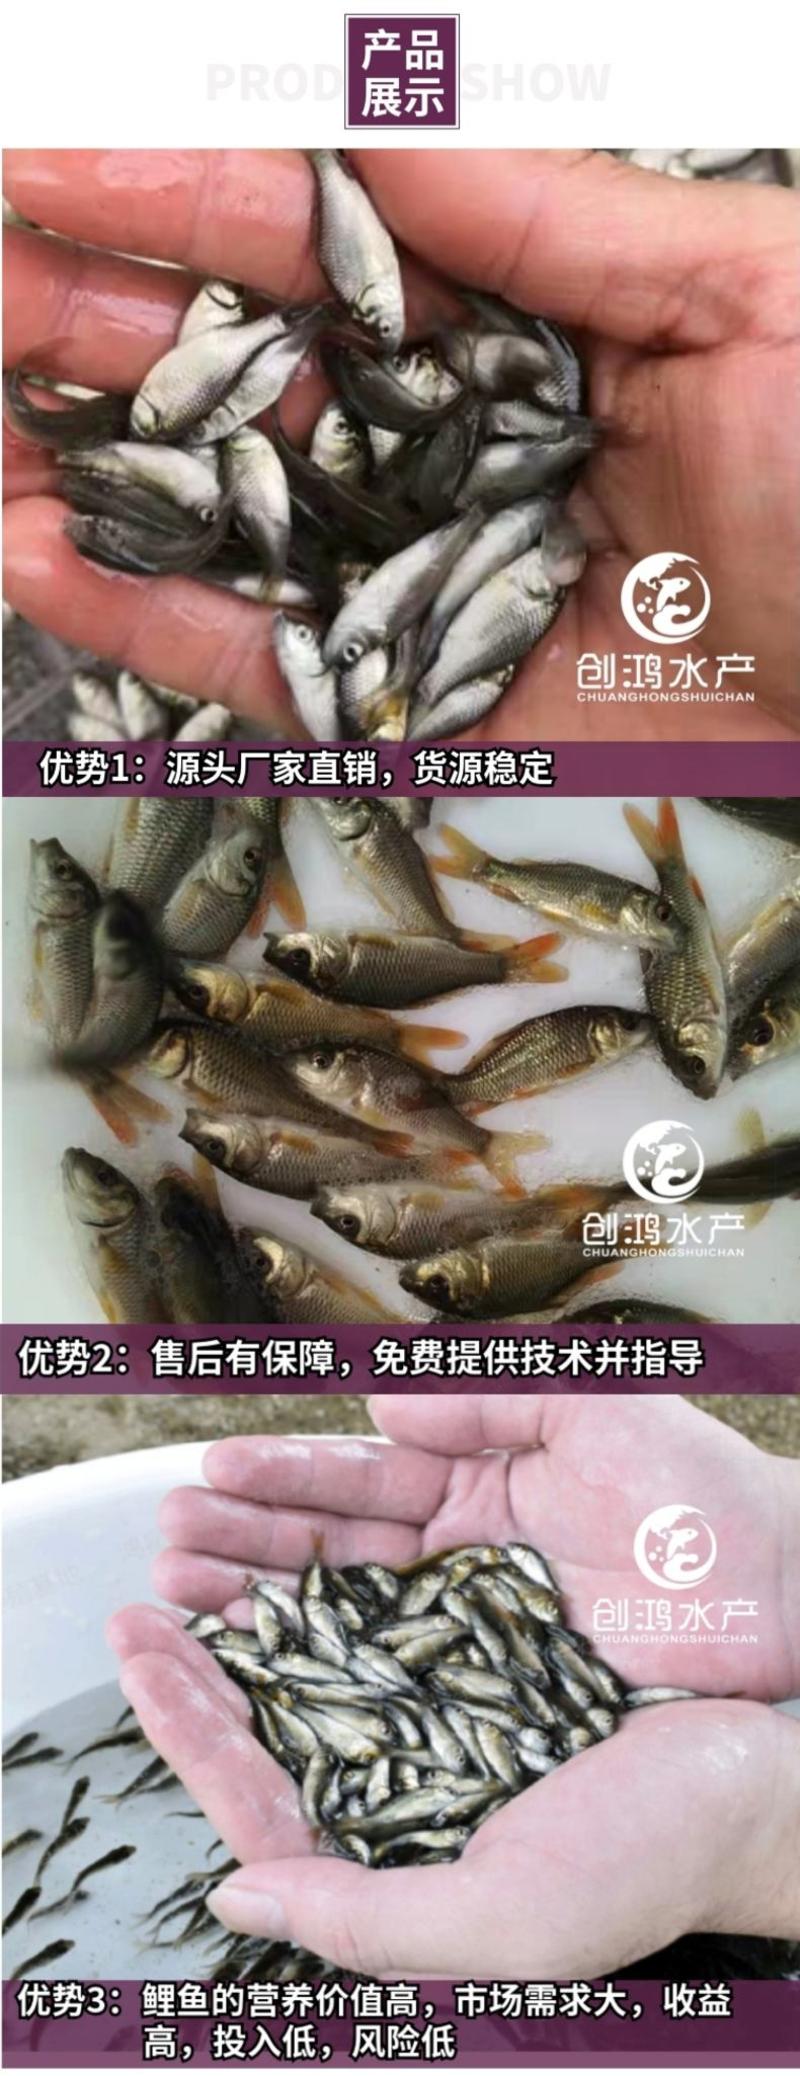 【2023新苗】鲤鱼苗红鲤鱼苗放生鱼供应大量批发